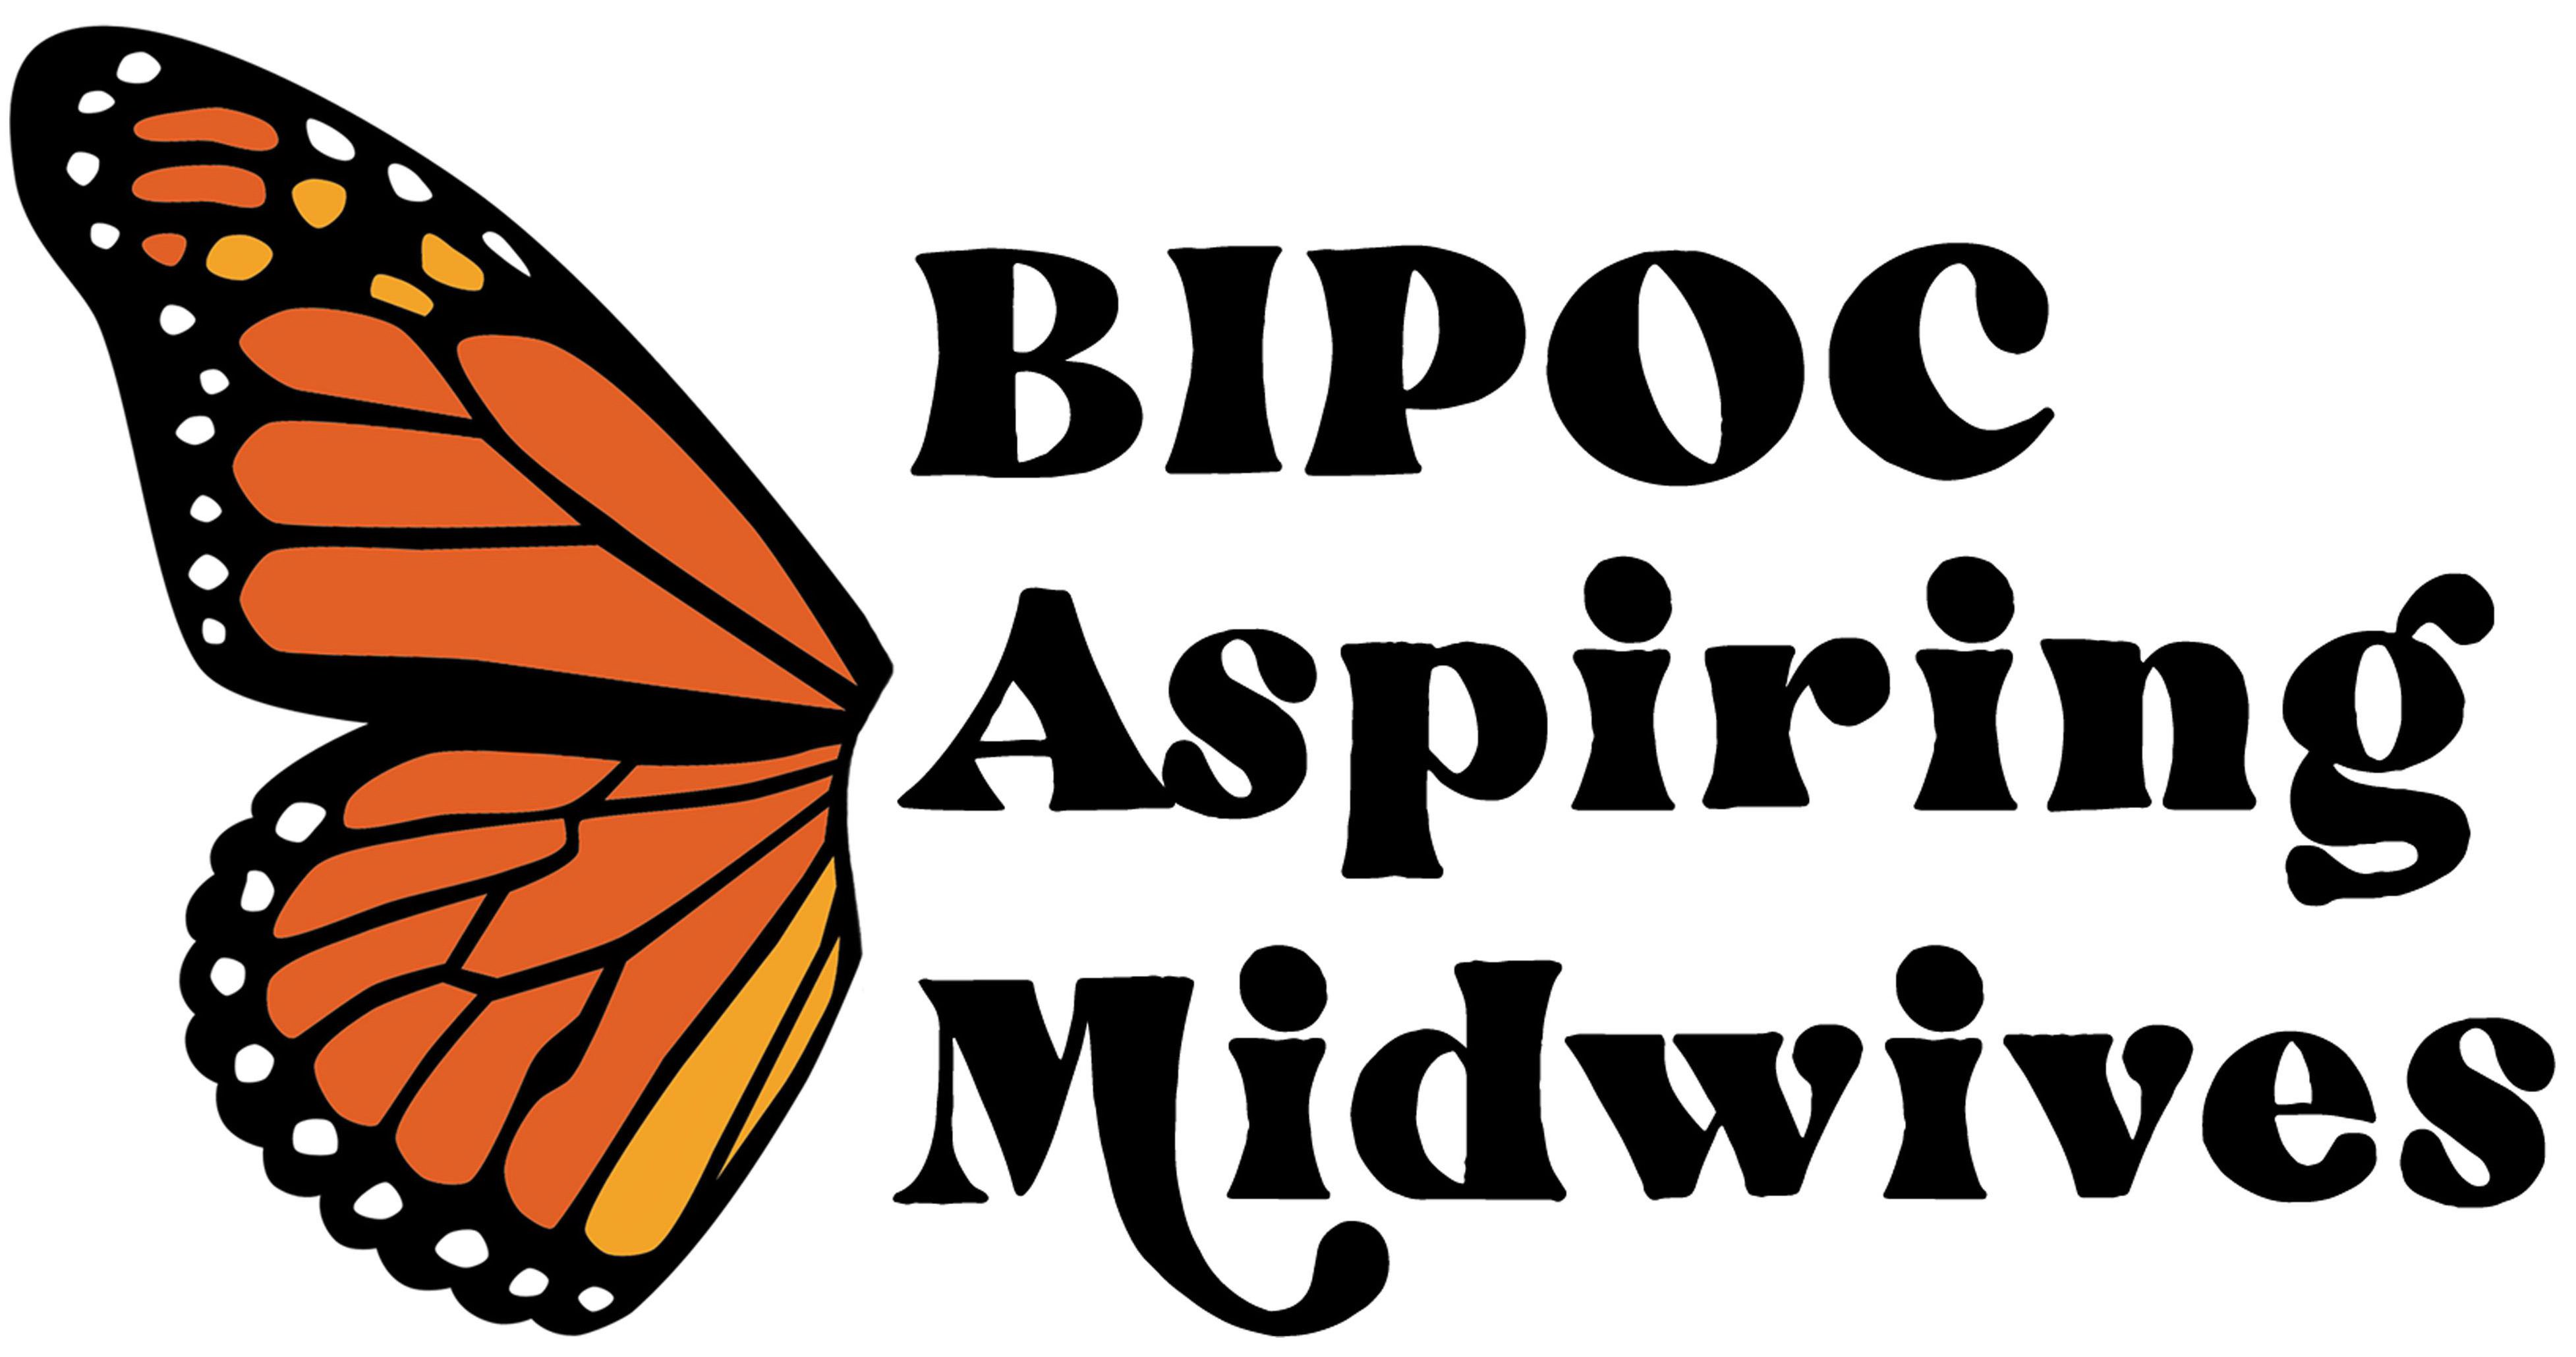  BIPOC ASPIRING MIDWIVES